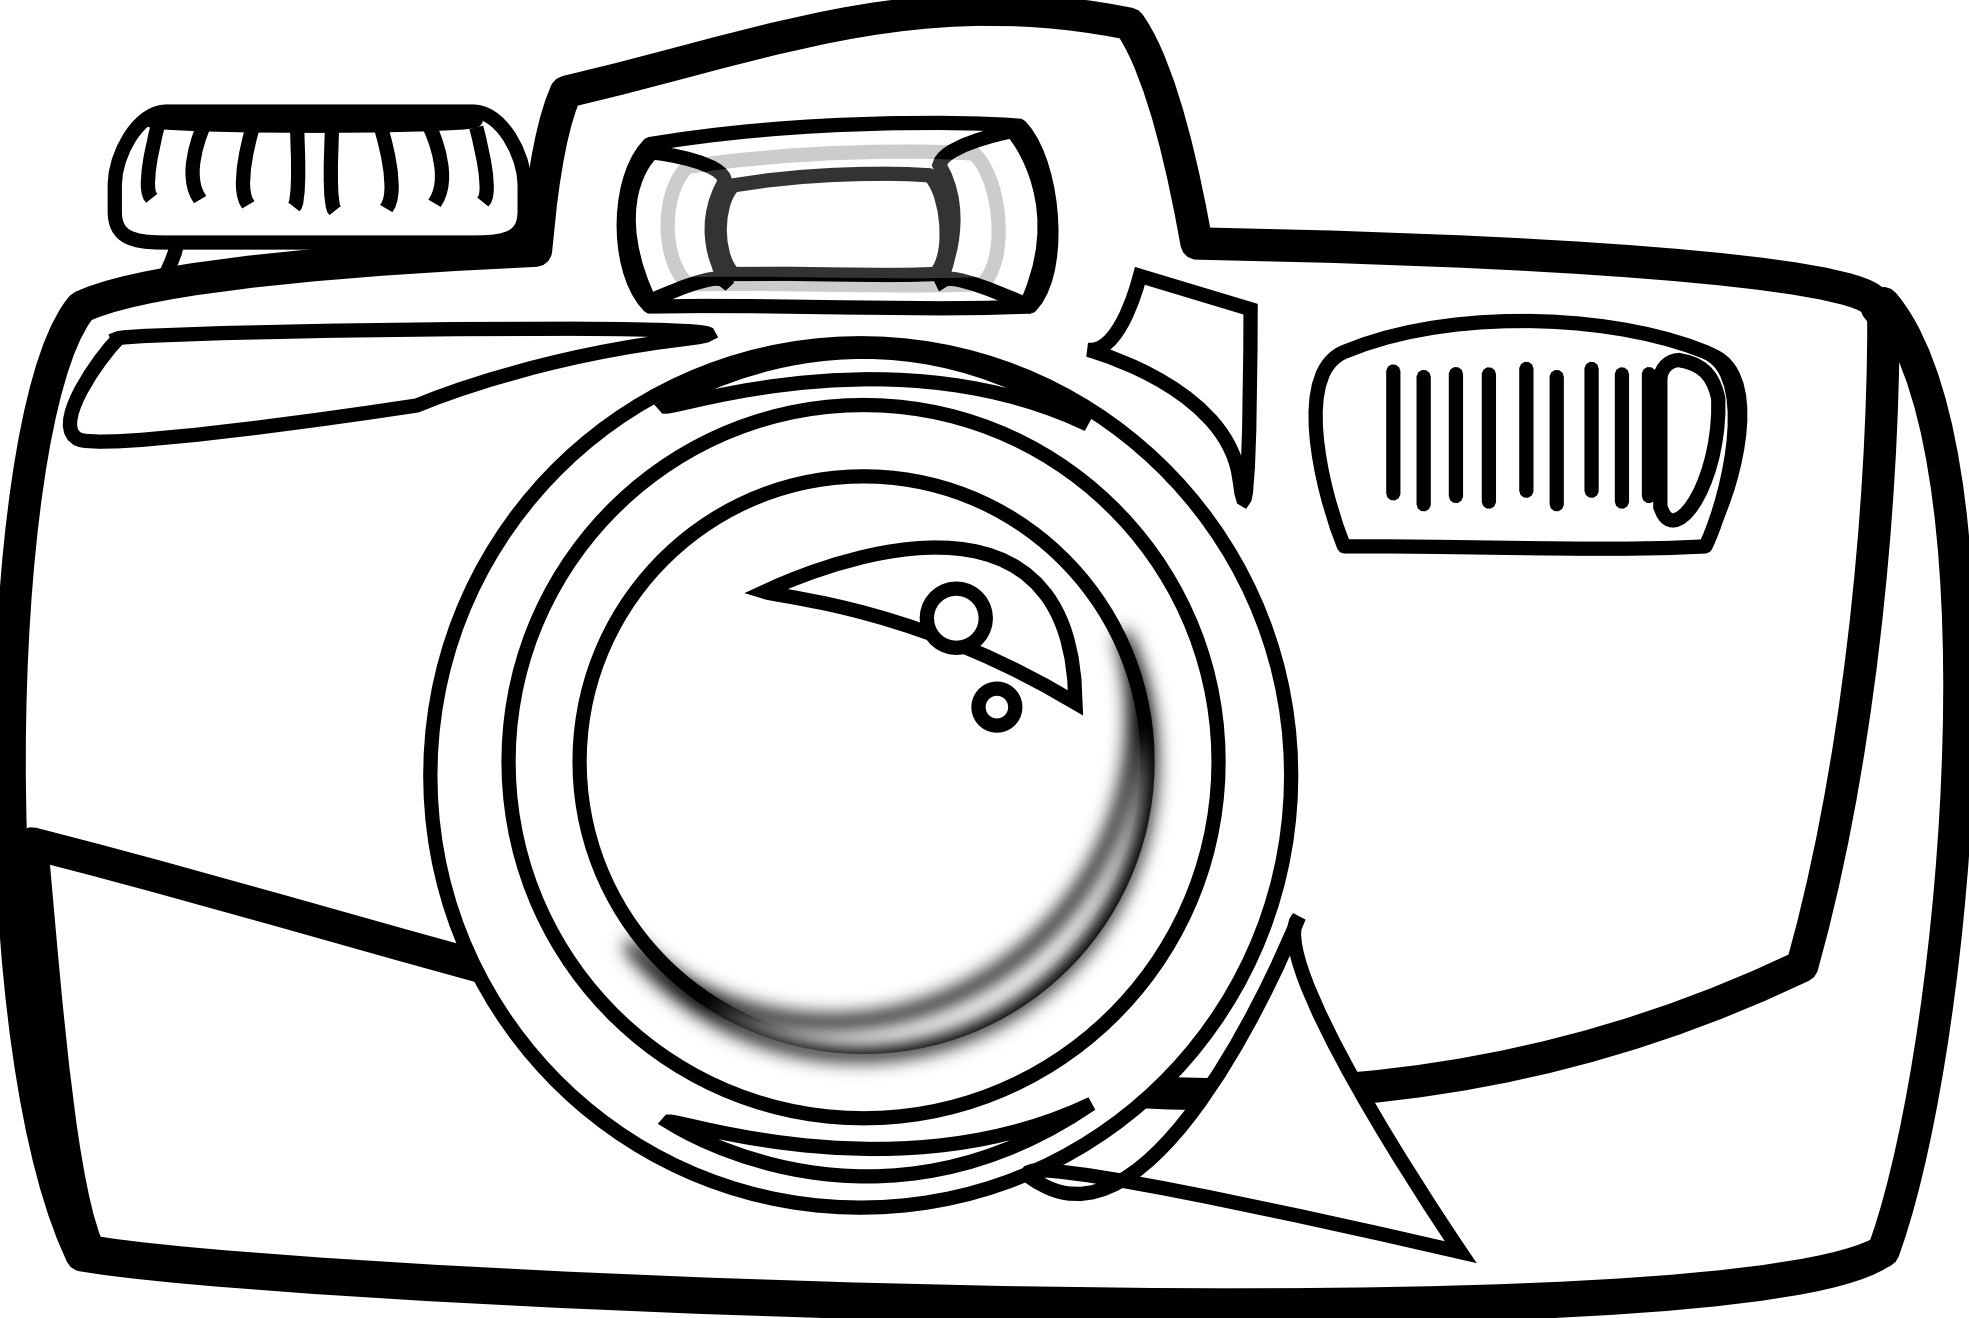 clipart cartoon camera - photo #34